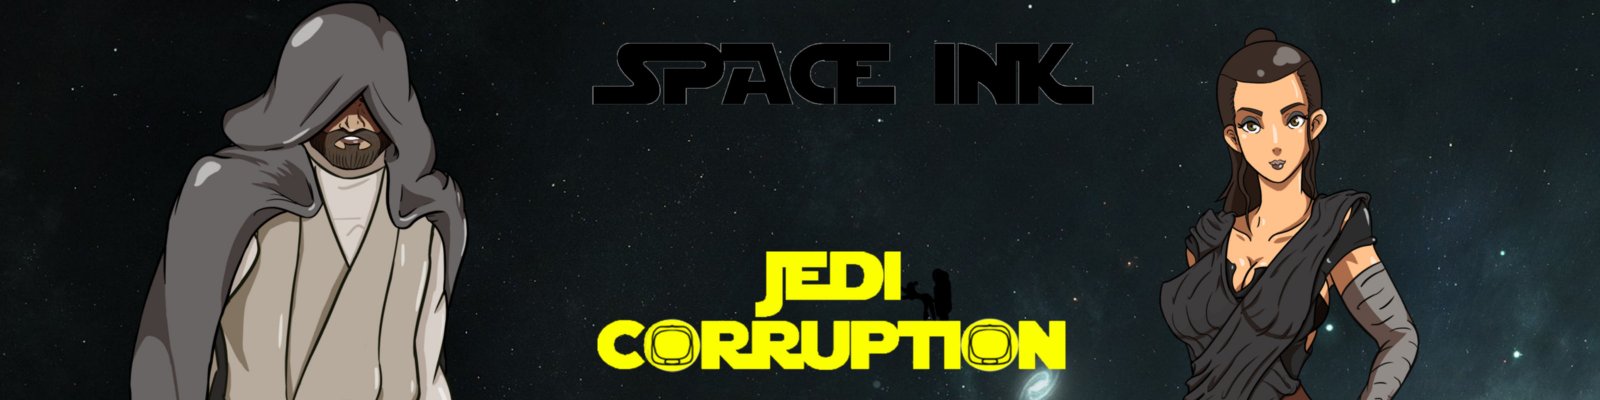 Jedi Corruption Version 0.1 by SpaceInk Porn Game